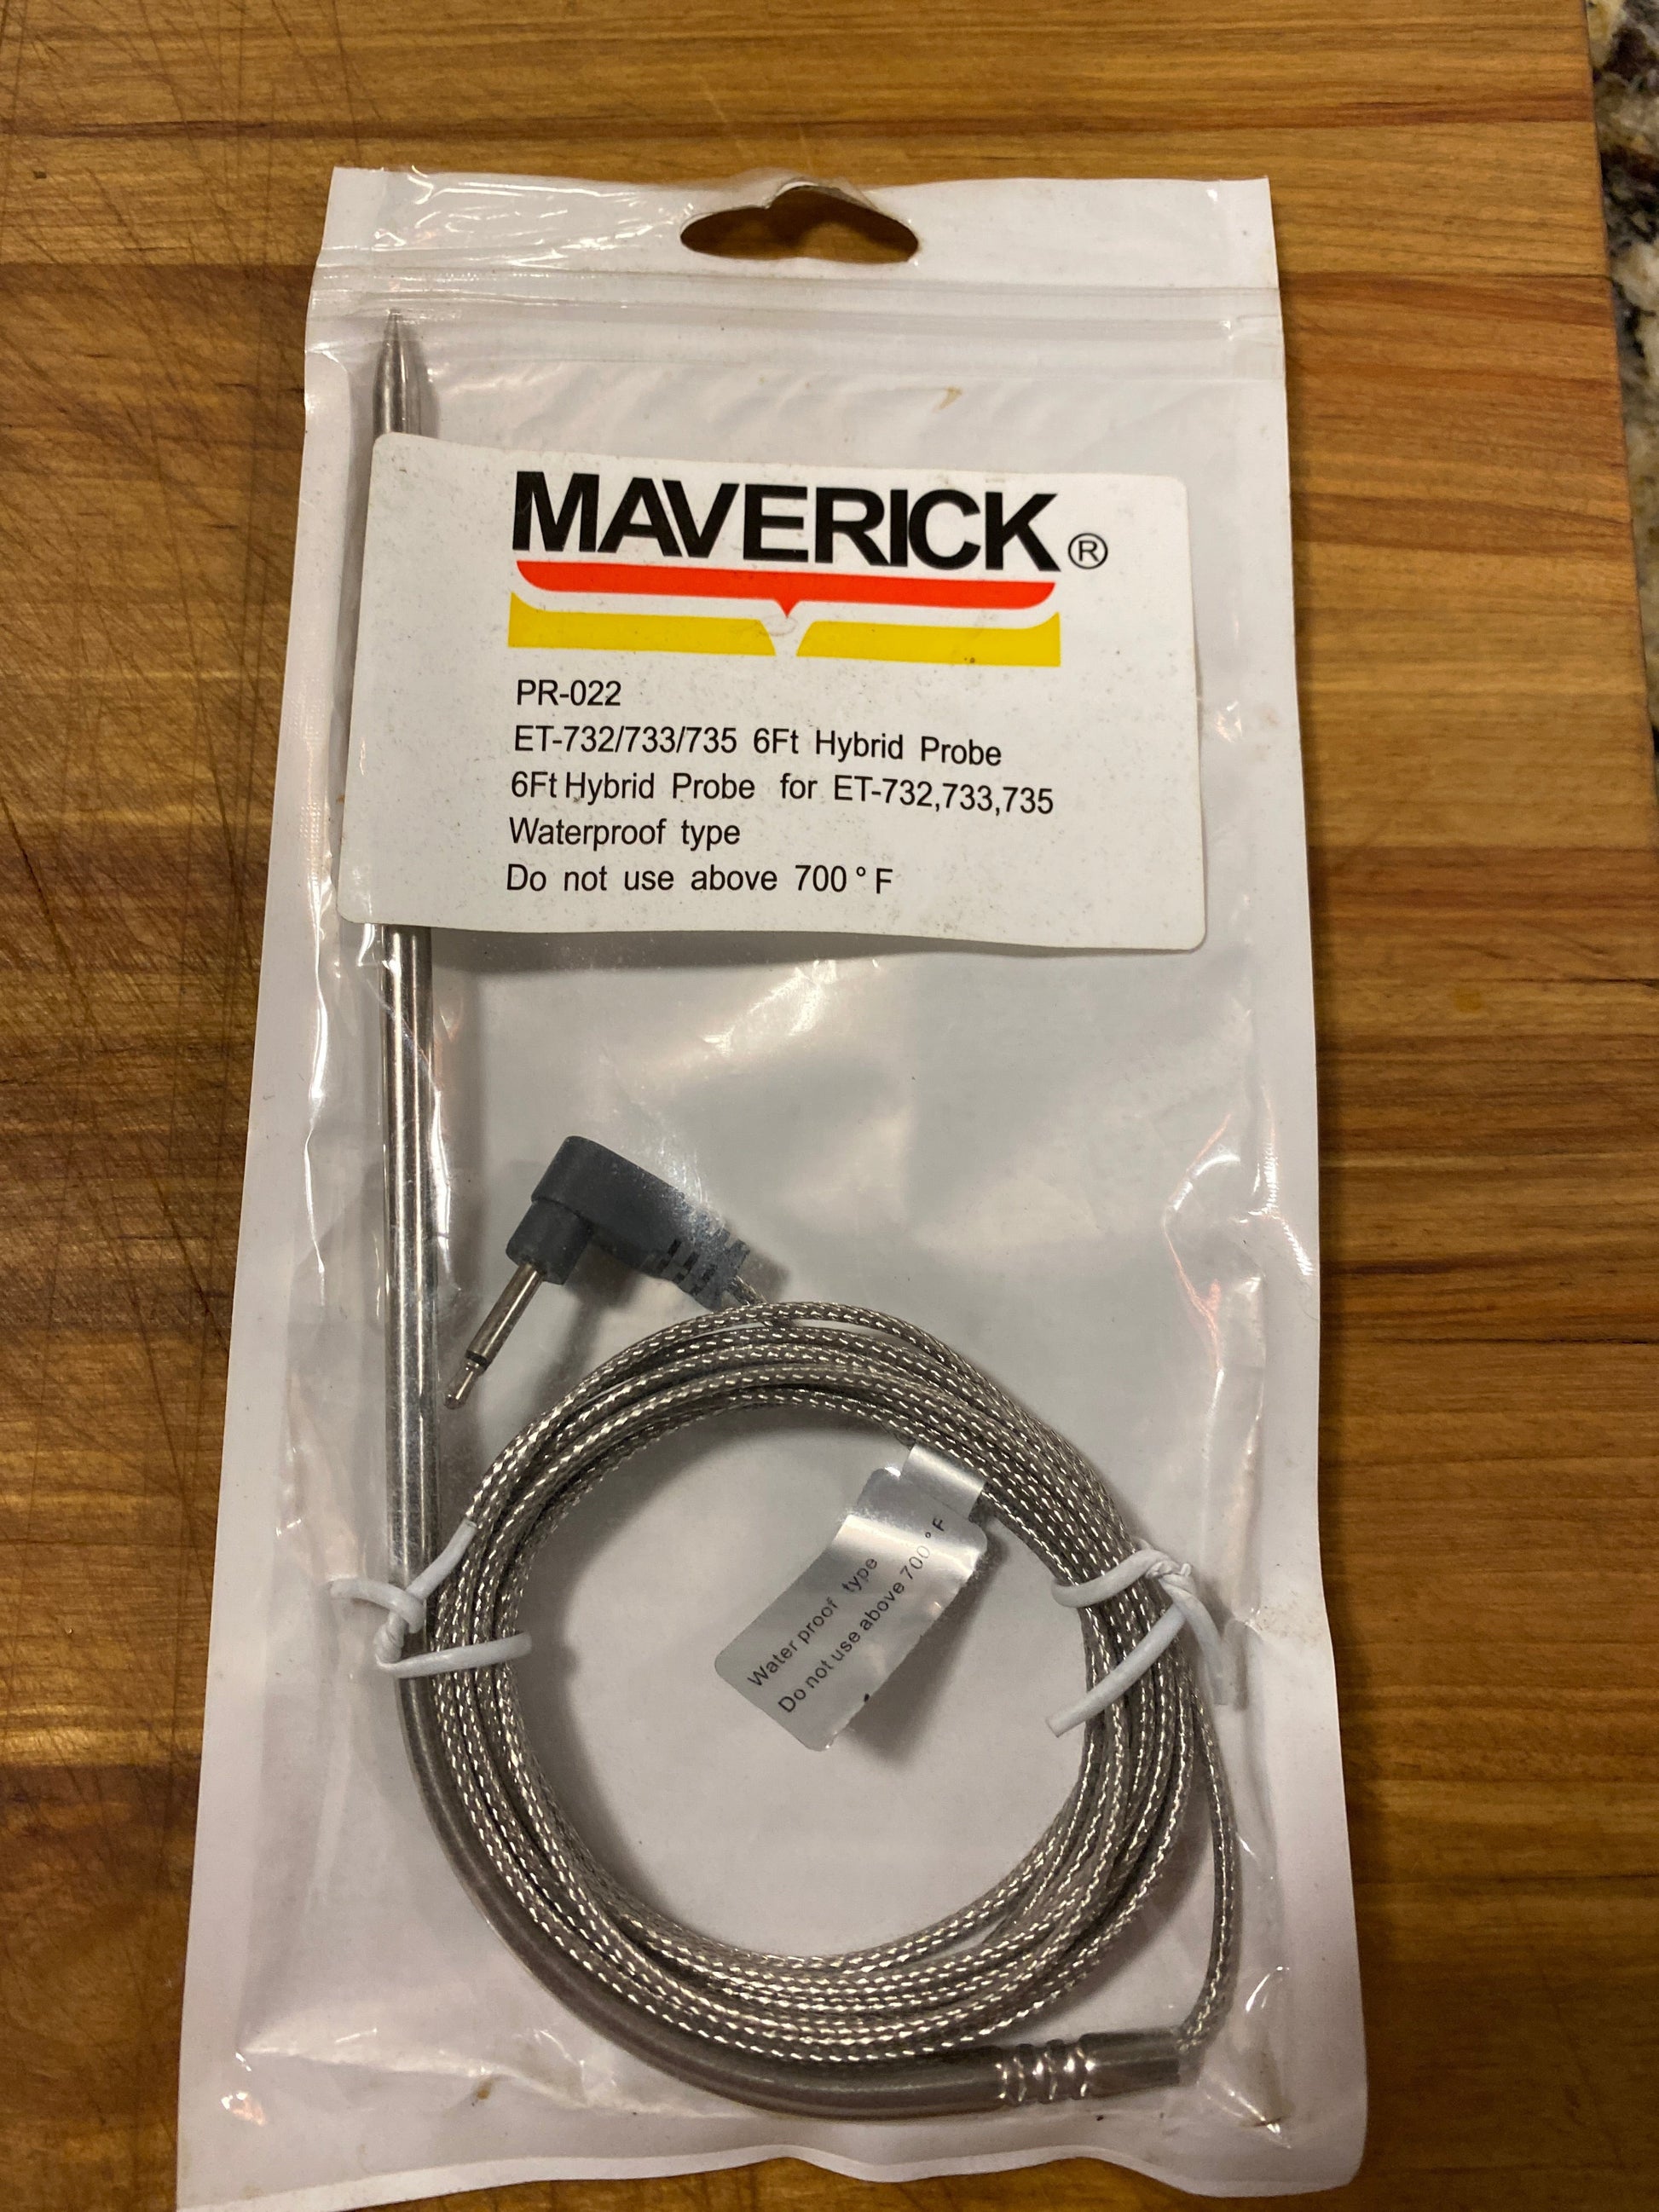 Maverick 6’ hybrid Thermometer probe for ET-732/733/735